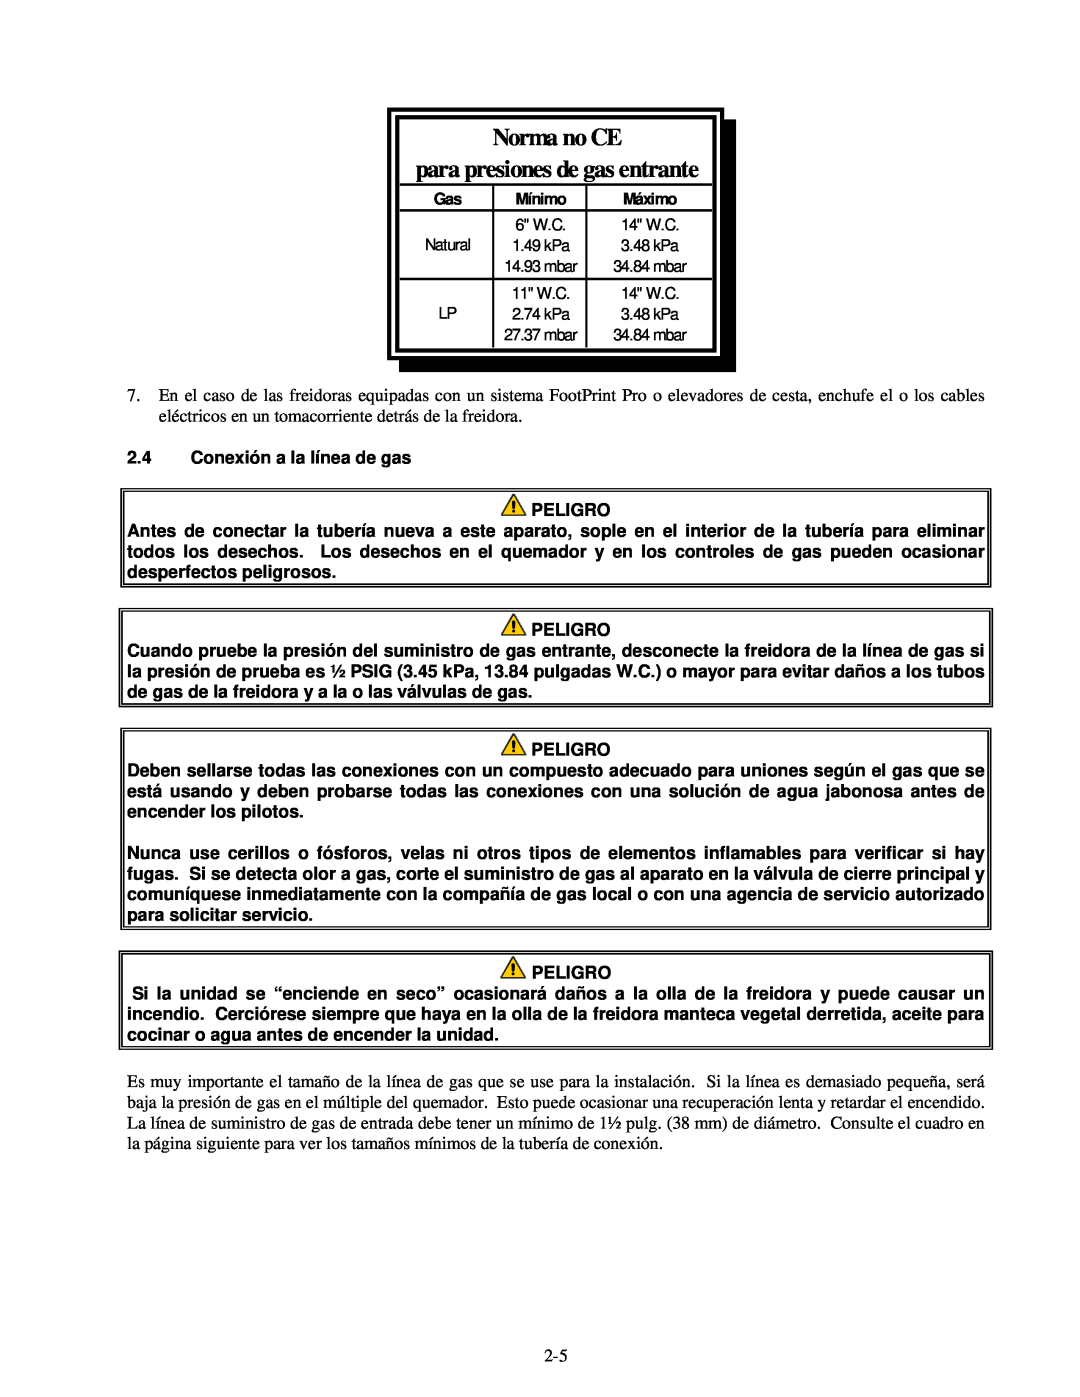 Frymaster H55 manual 2.4Conexión a la línea de gas PELIGRO, Norma no CE para presiones de gas entrante, Peligro 